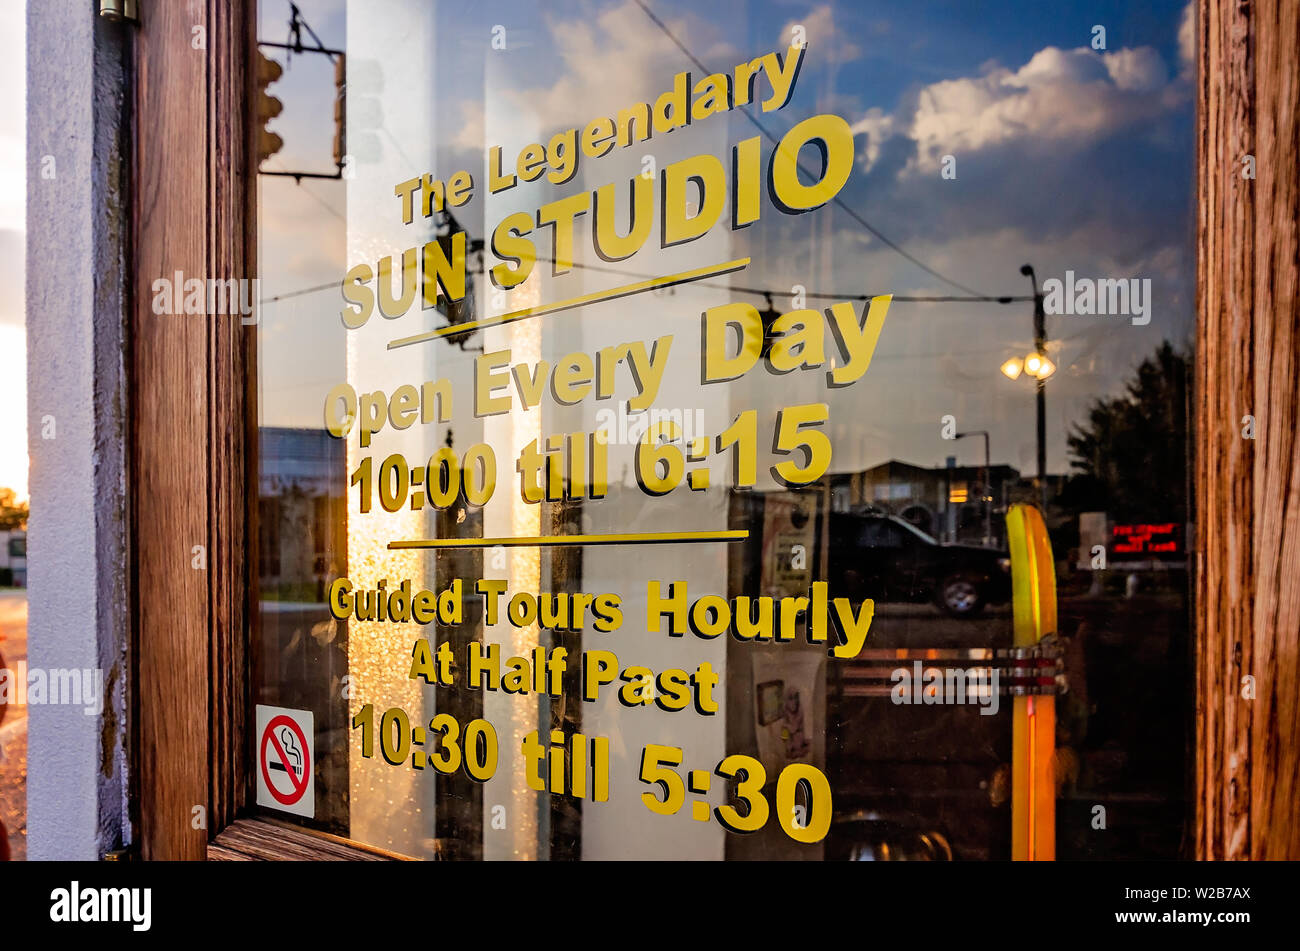 Il sole tramonta su Sun Studio, Sett. 6, 2015. Lo studio di registrazione ed etichetta discografica sono stati resi famosi da cantanti come Elvis Presley e Johnny Cash. Foto Stock